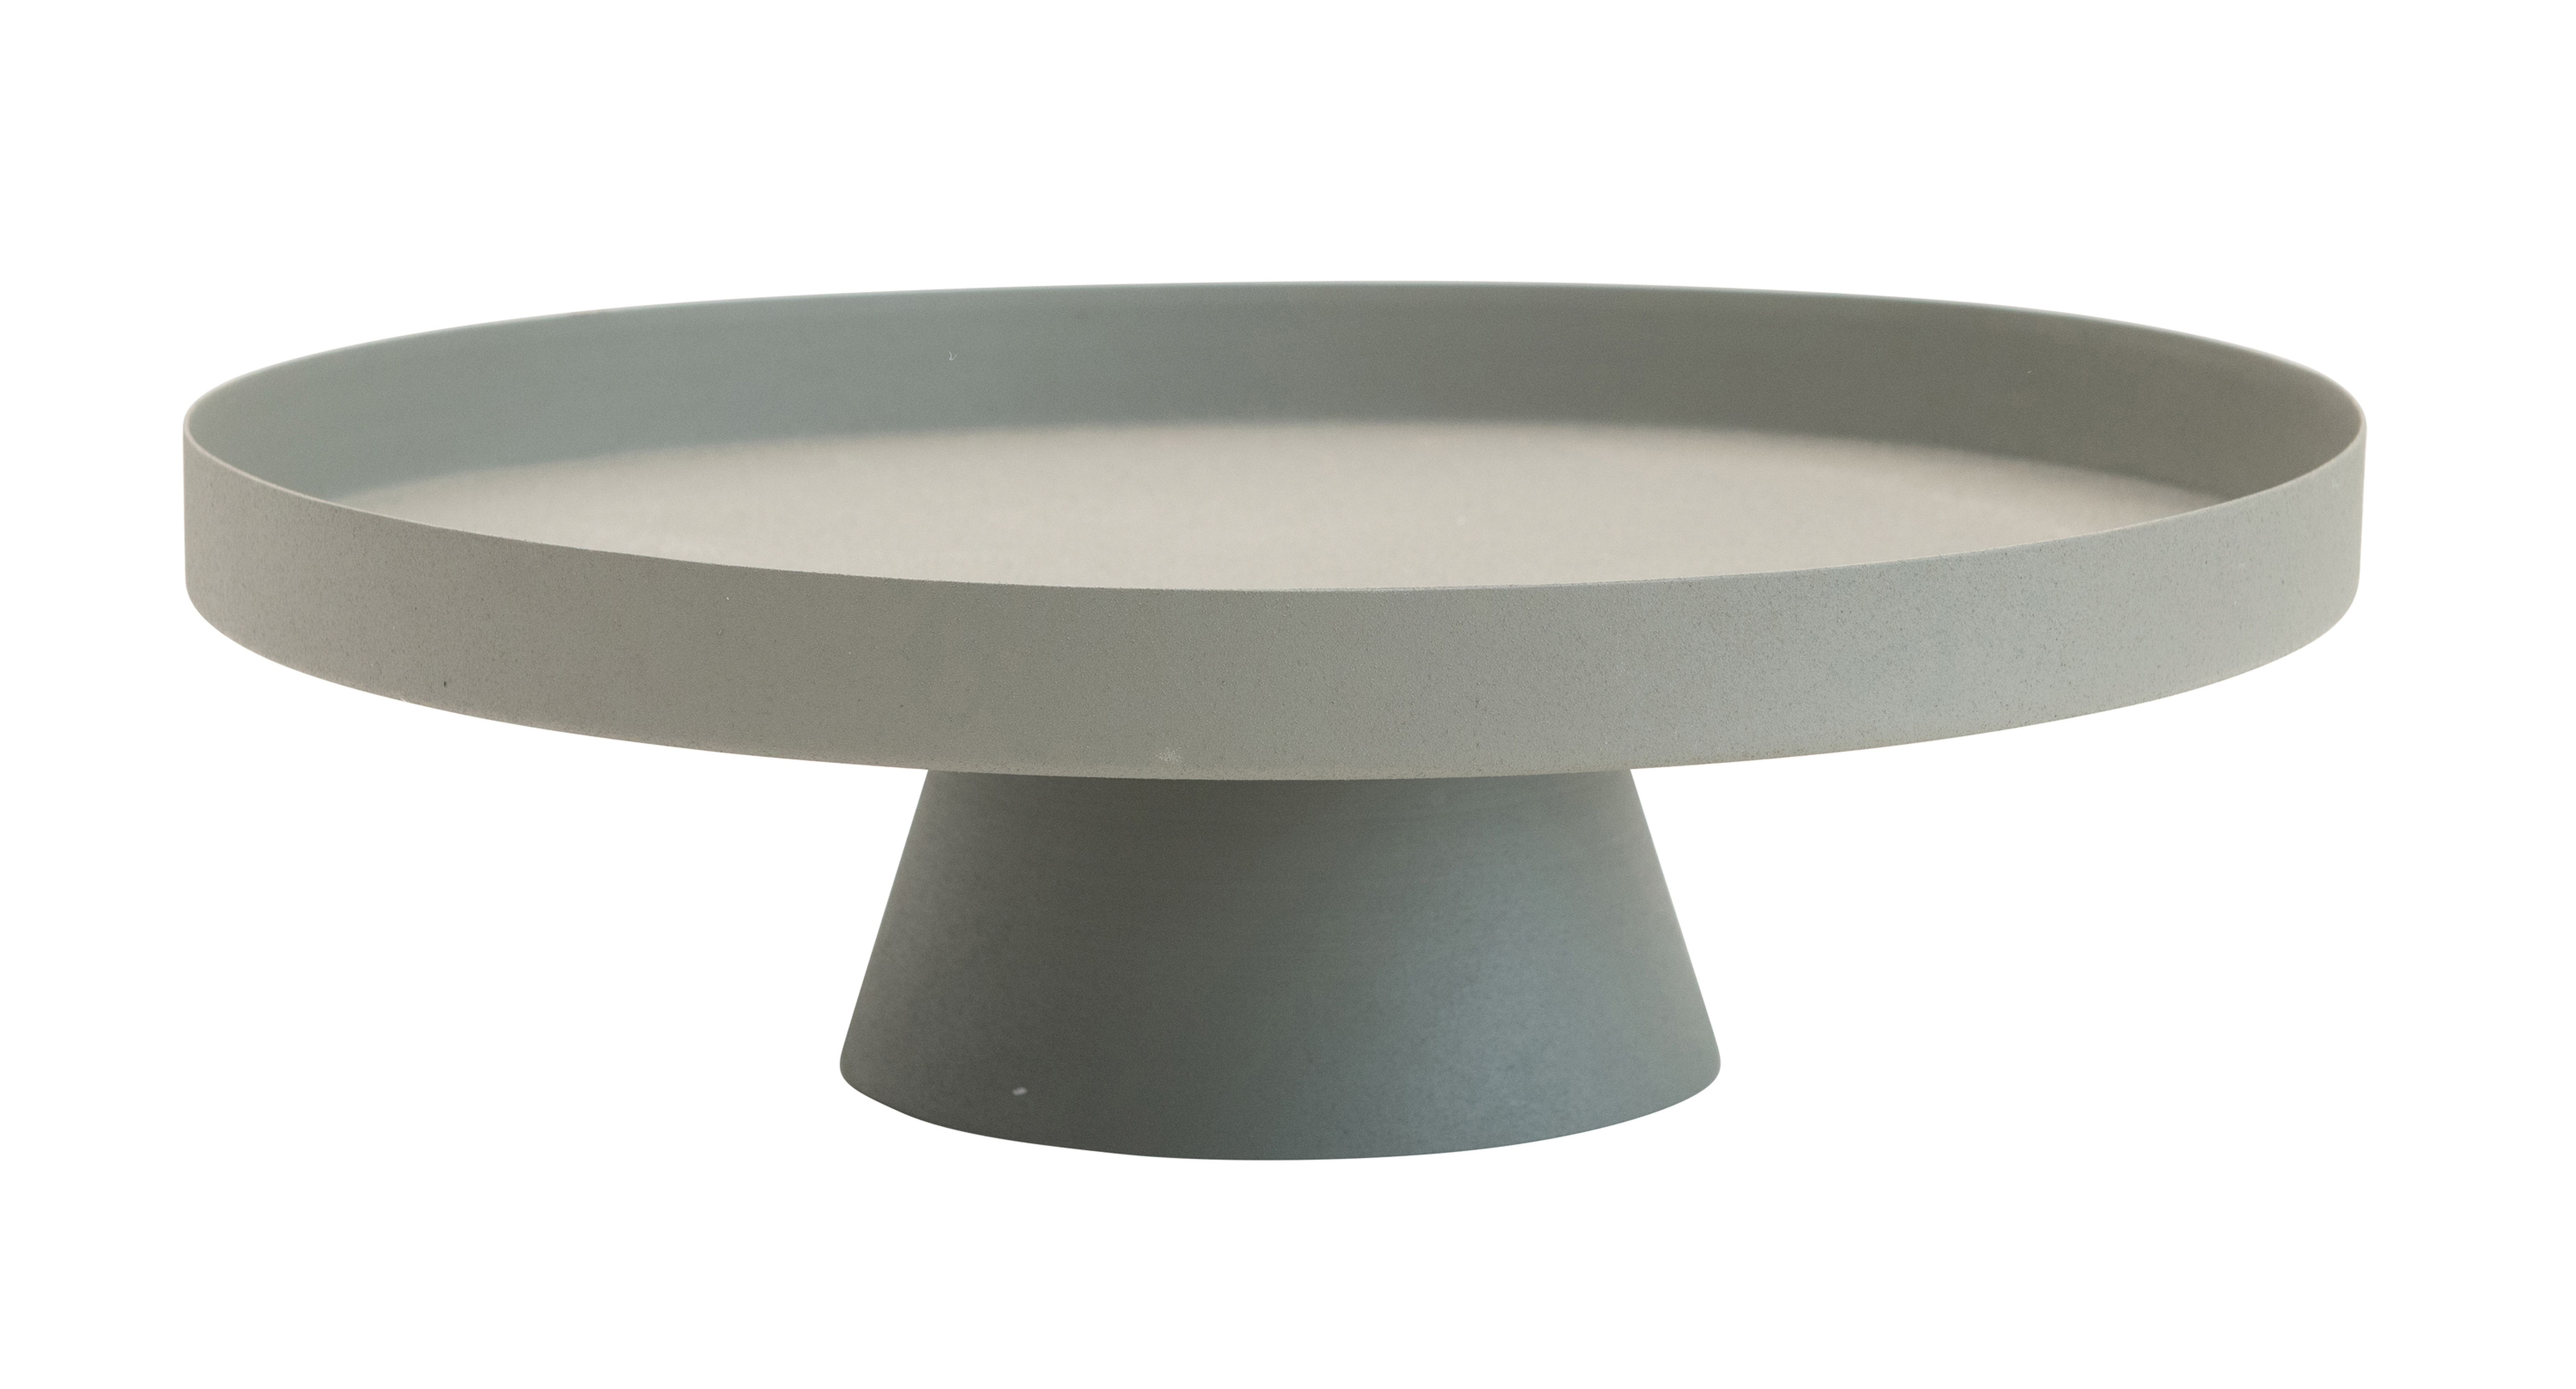 Decorative Round Textured Metal Tray with Pedestal Base, Sage - Moss & Wilder